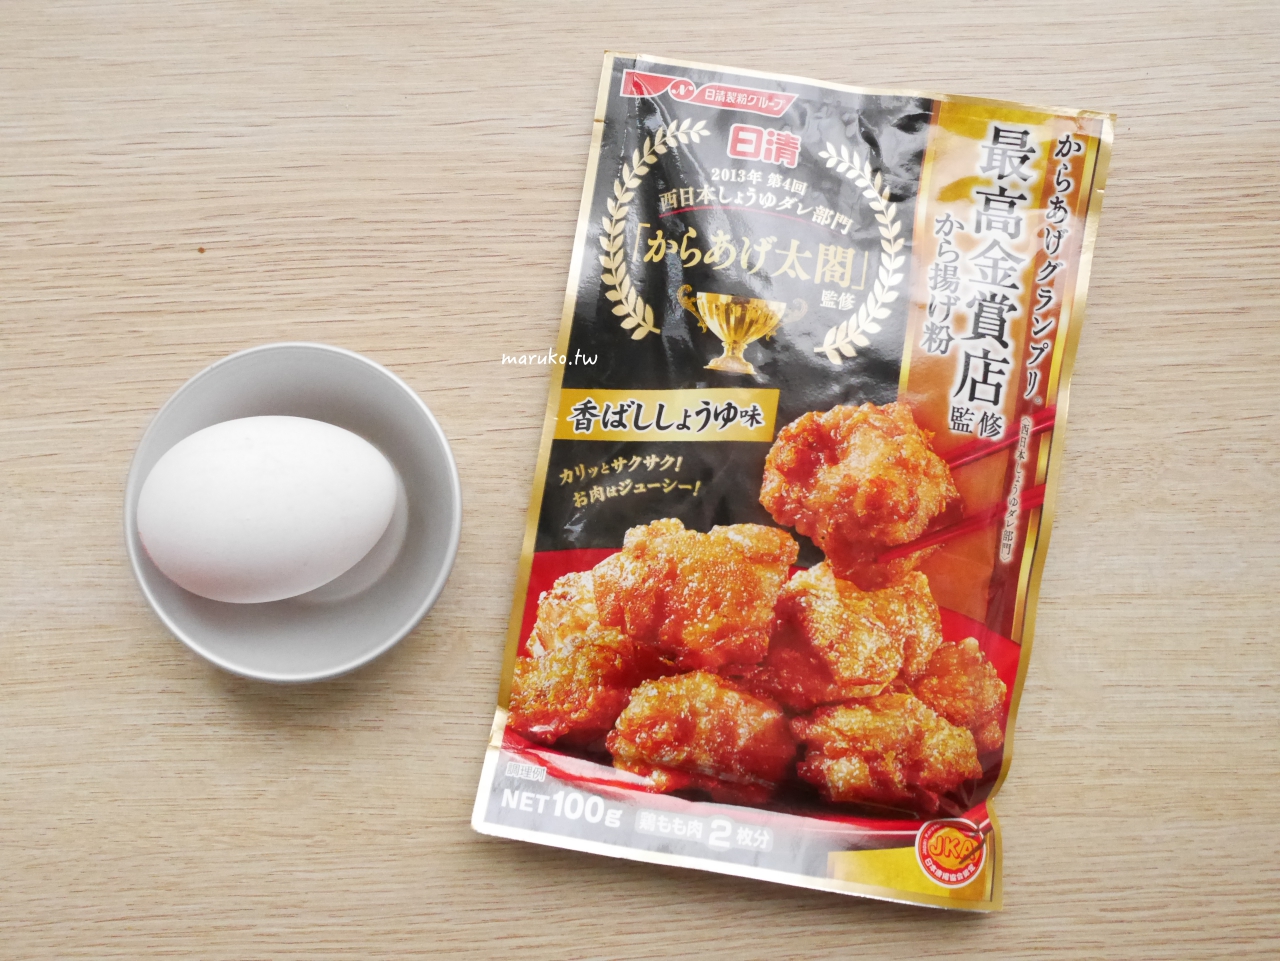 【食譜】嫩煎雞胸肉 日清炸雞粉用法 這樣做雞肉更香嫩 @Maruko與美食有個約會